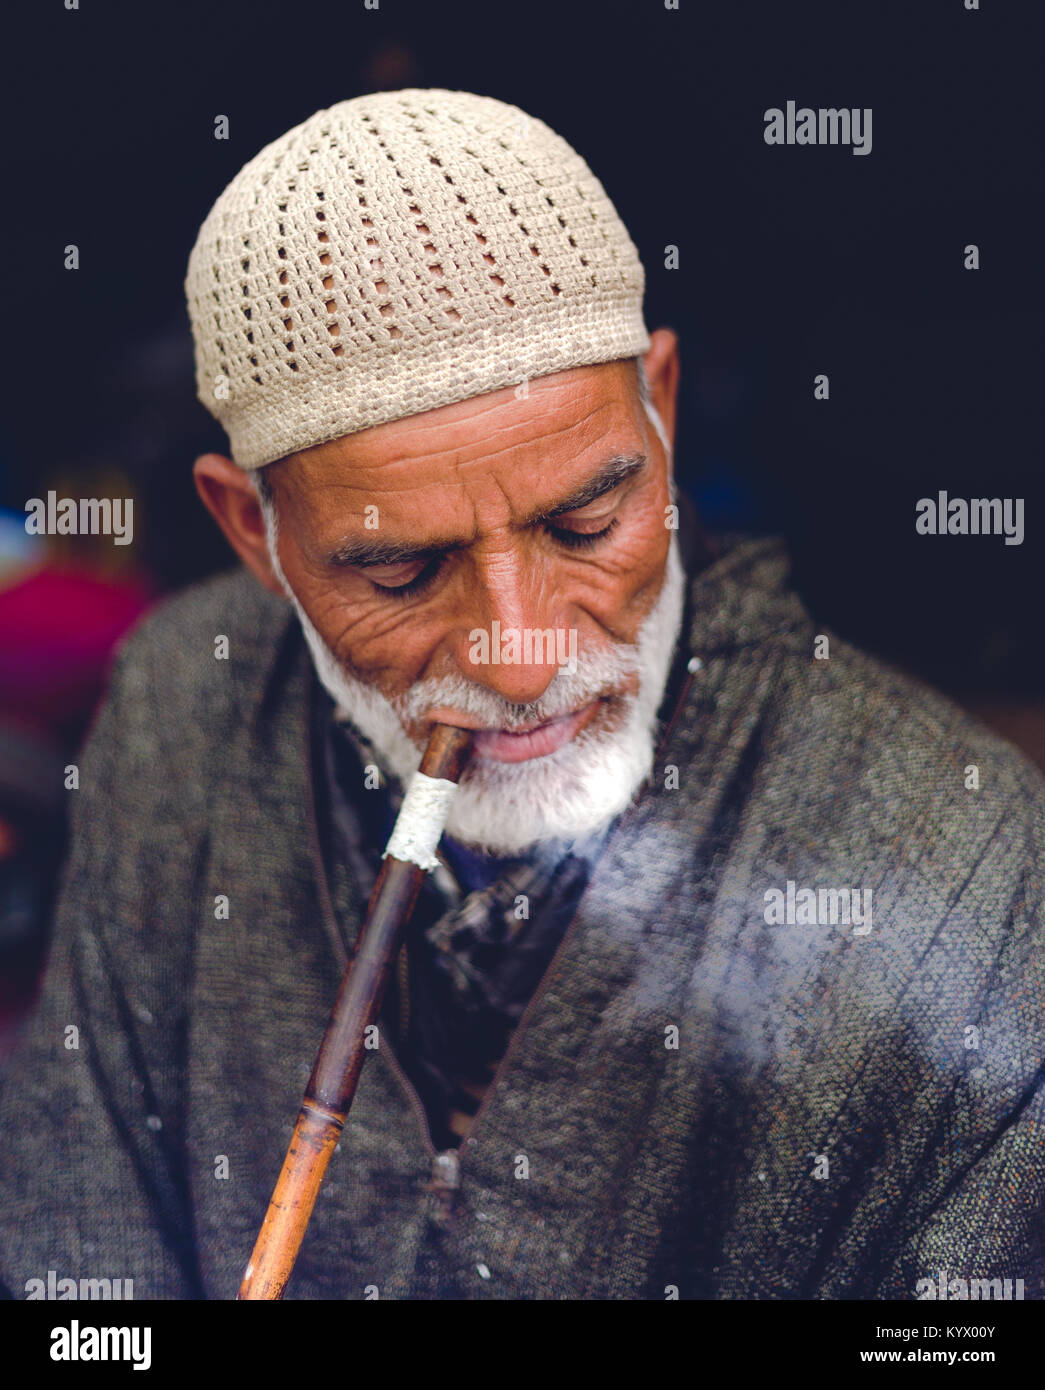 Sonamarg, Jammu und Kaschmir - 11. August 2017: Eine alte traditionelle muslimische Kaschmir Mann raucht Shisha / Wasserpfeife bei thajiwas Gletscher fo Erholung. Stockfoto